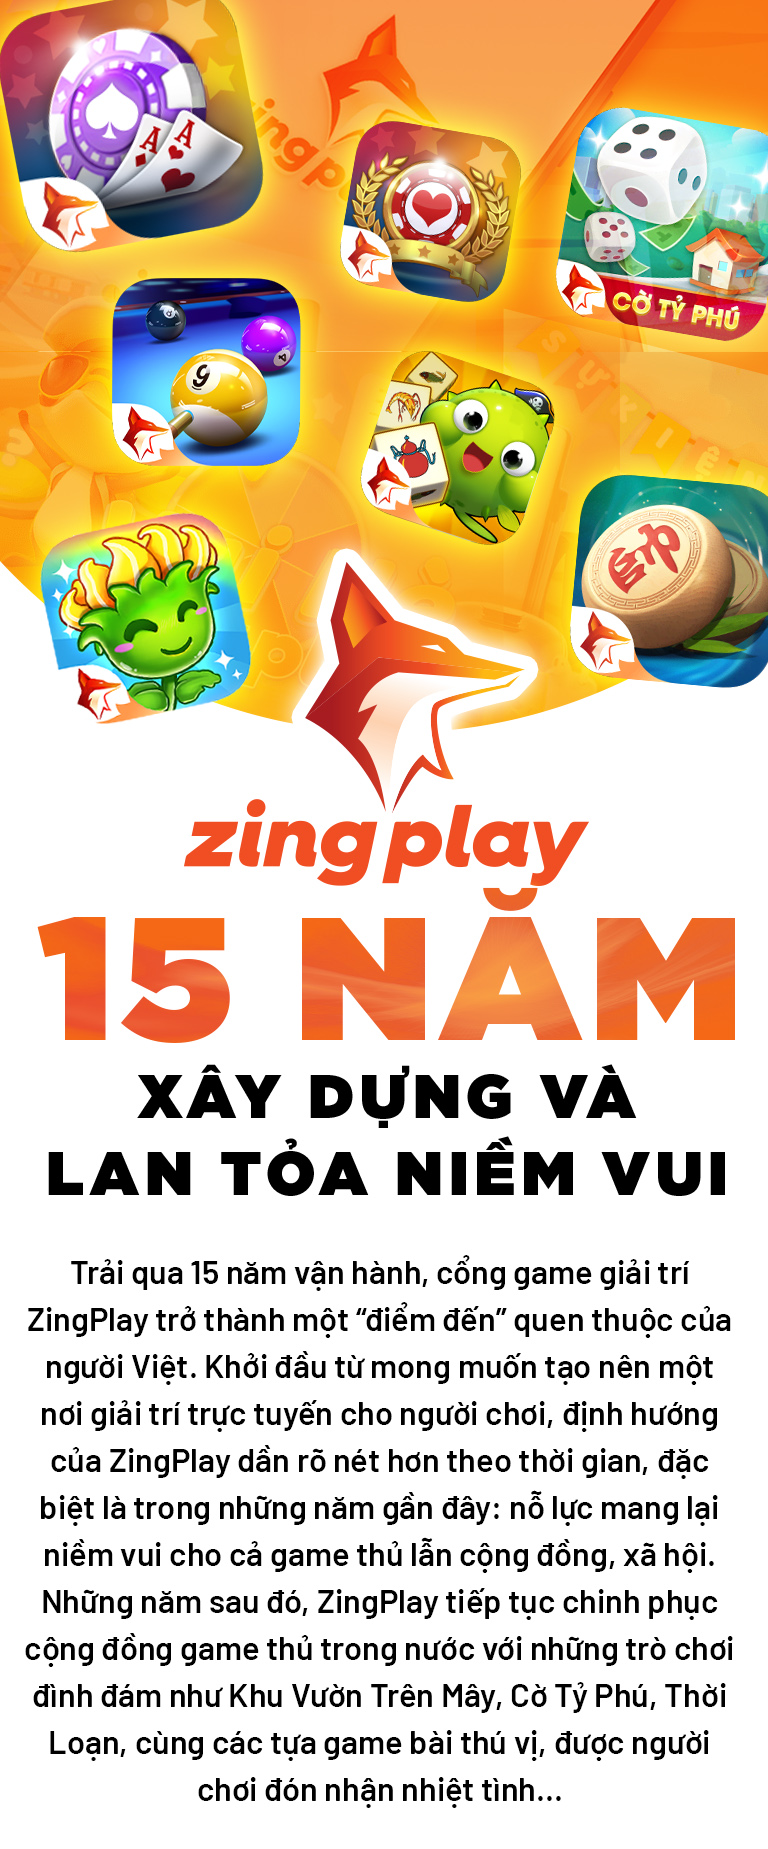 Zingplay – Cổng game đa nền tảng miễn phí lớn nhất tại Việt Nam